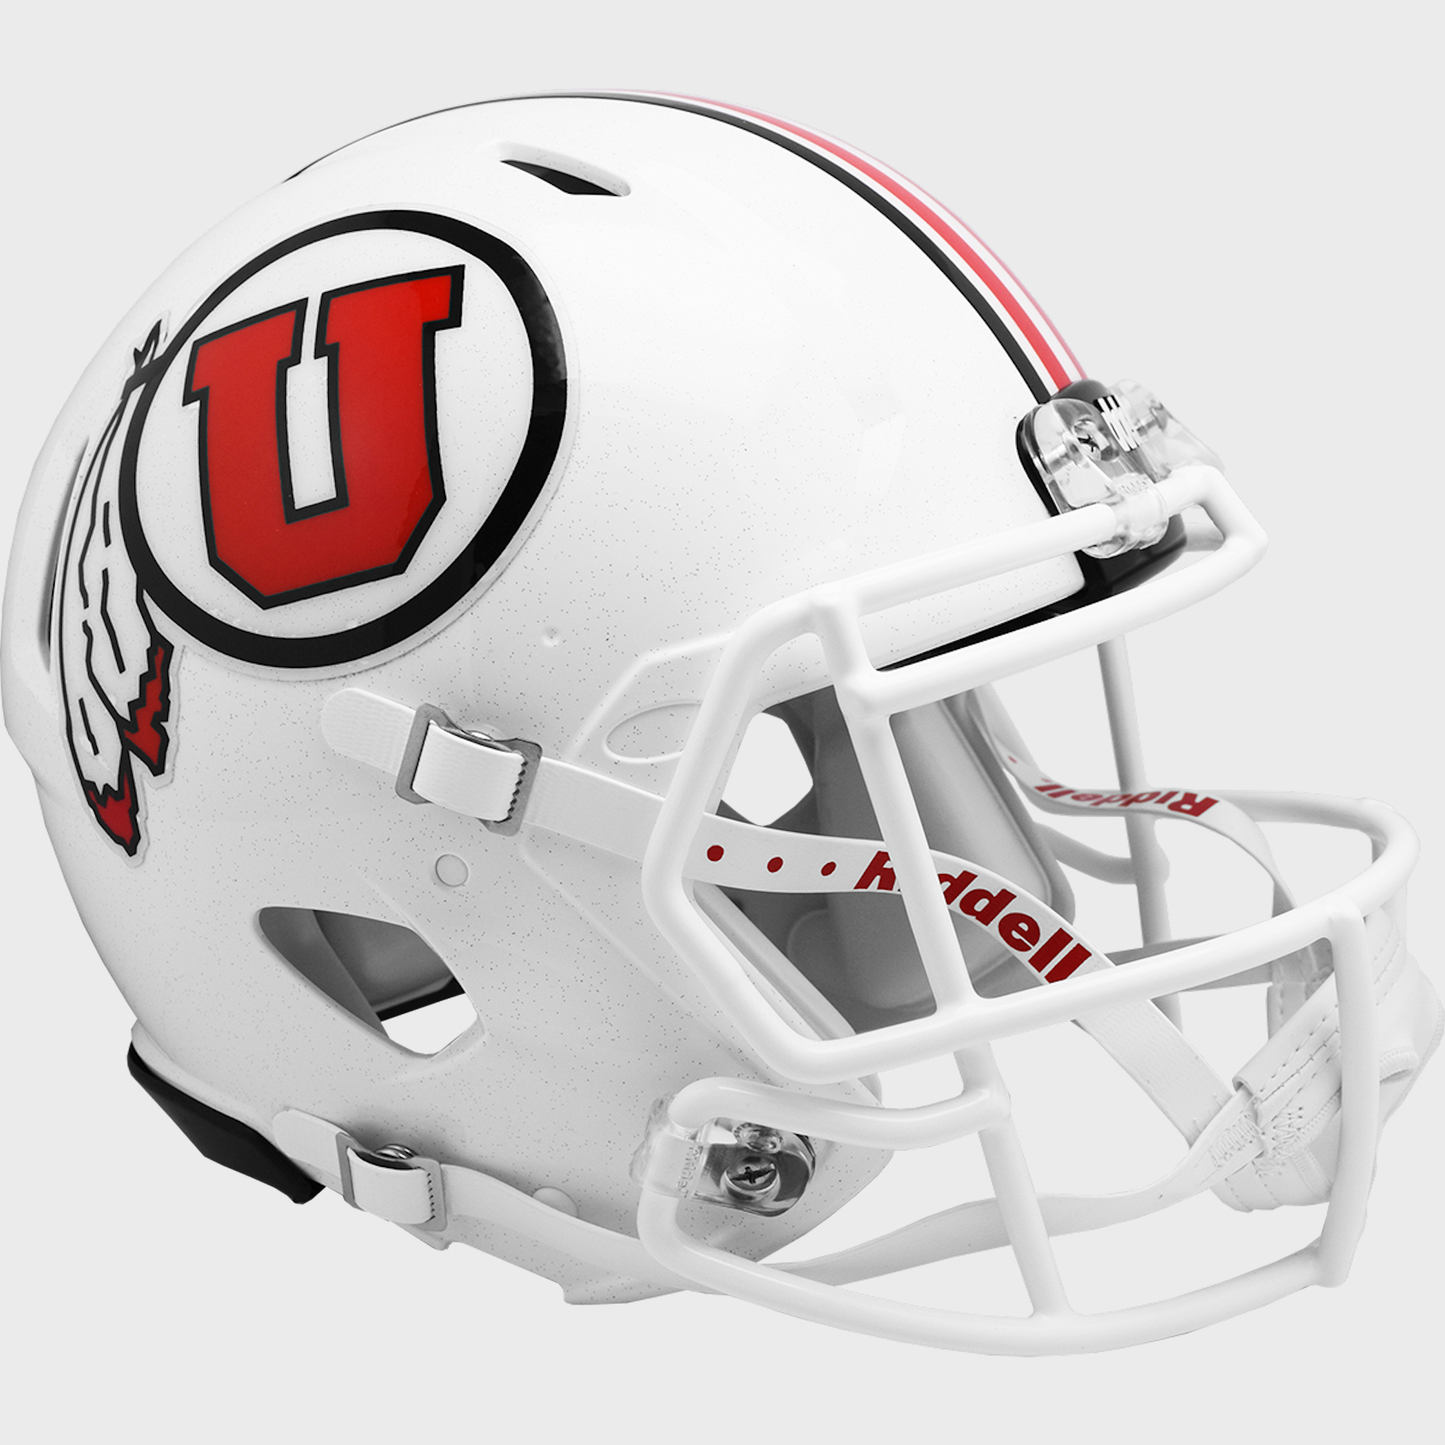 Utah Utes authentic full size helmet